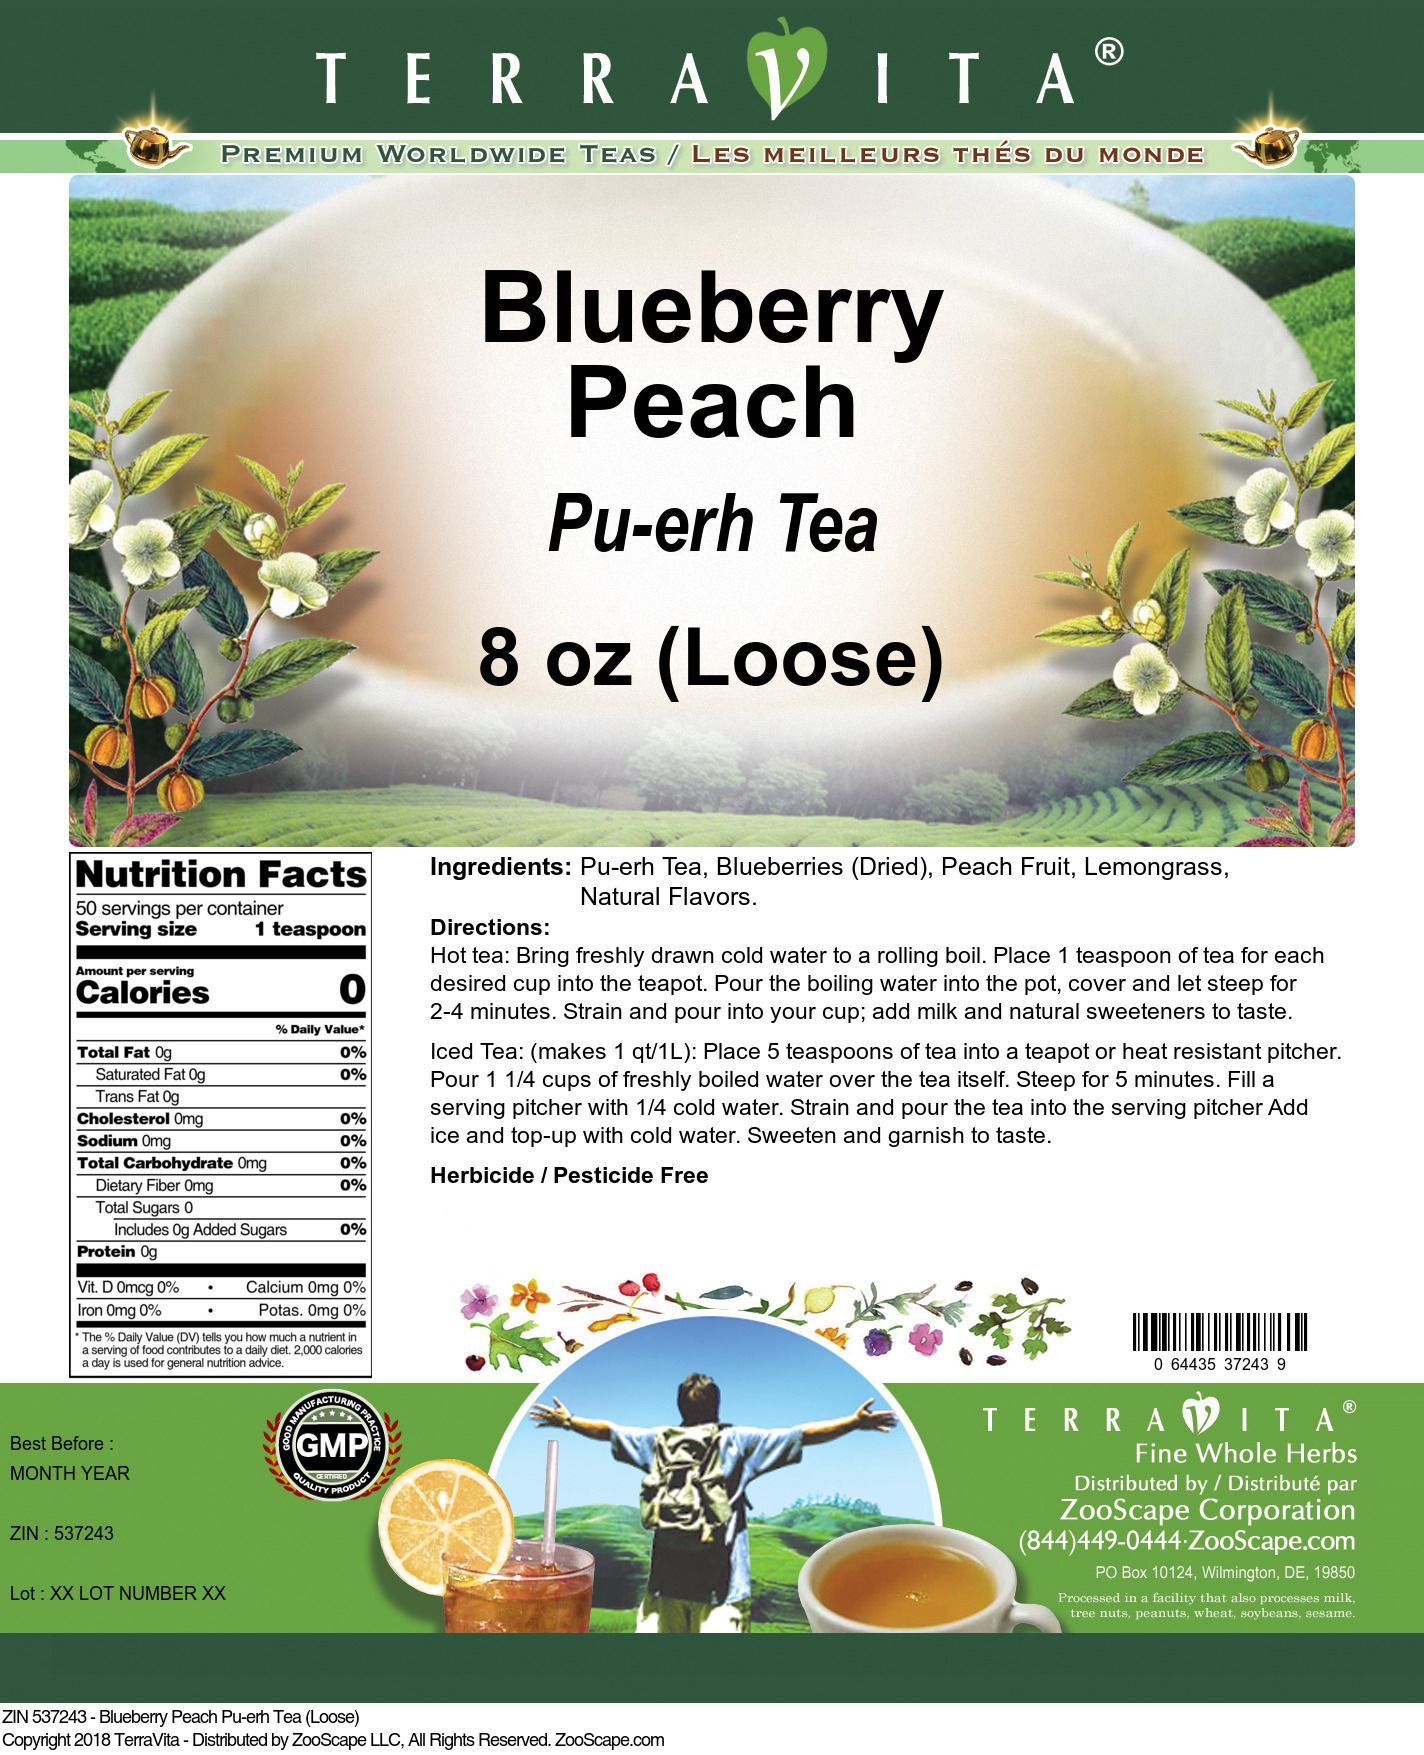 Blueberry Peach Pu-erh Tea (Loose) - Label